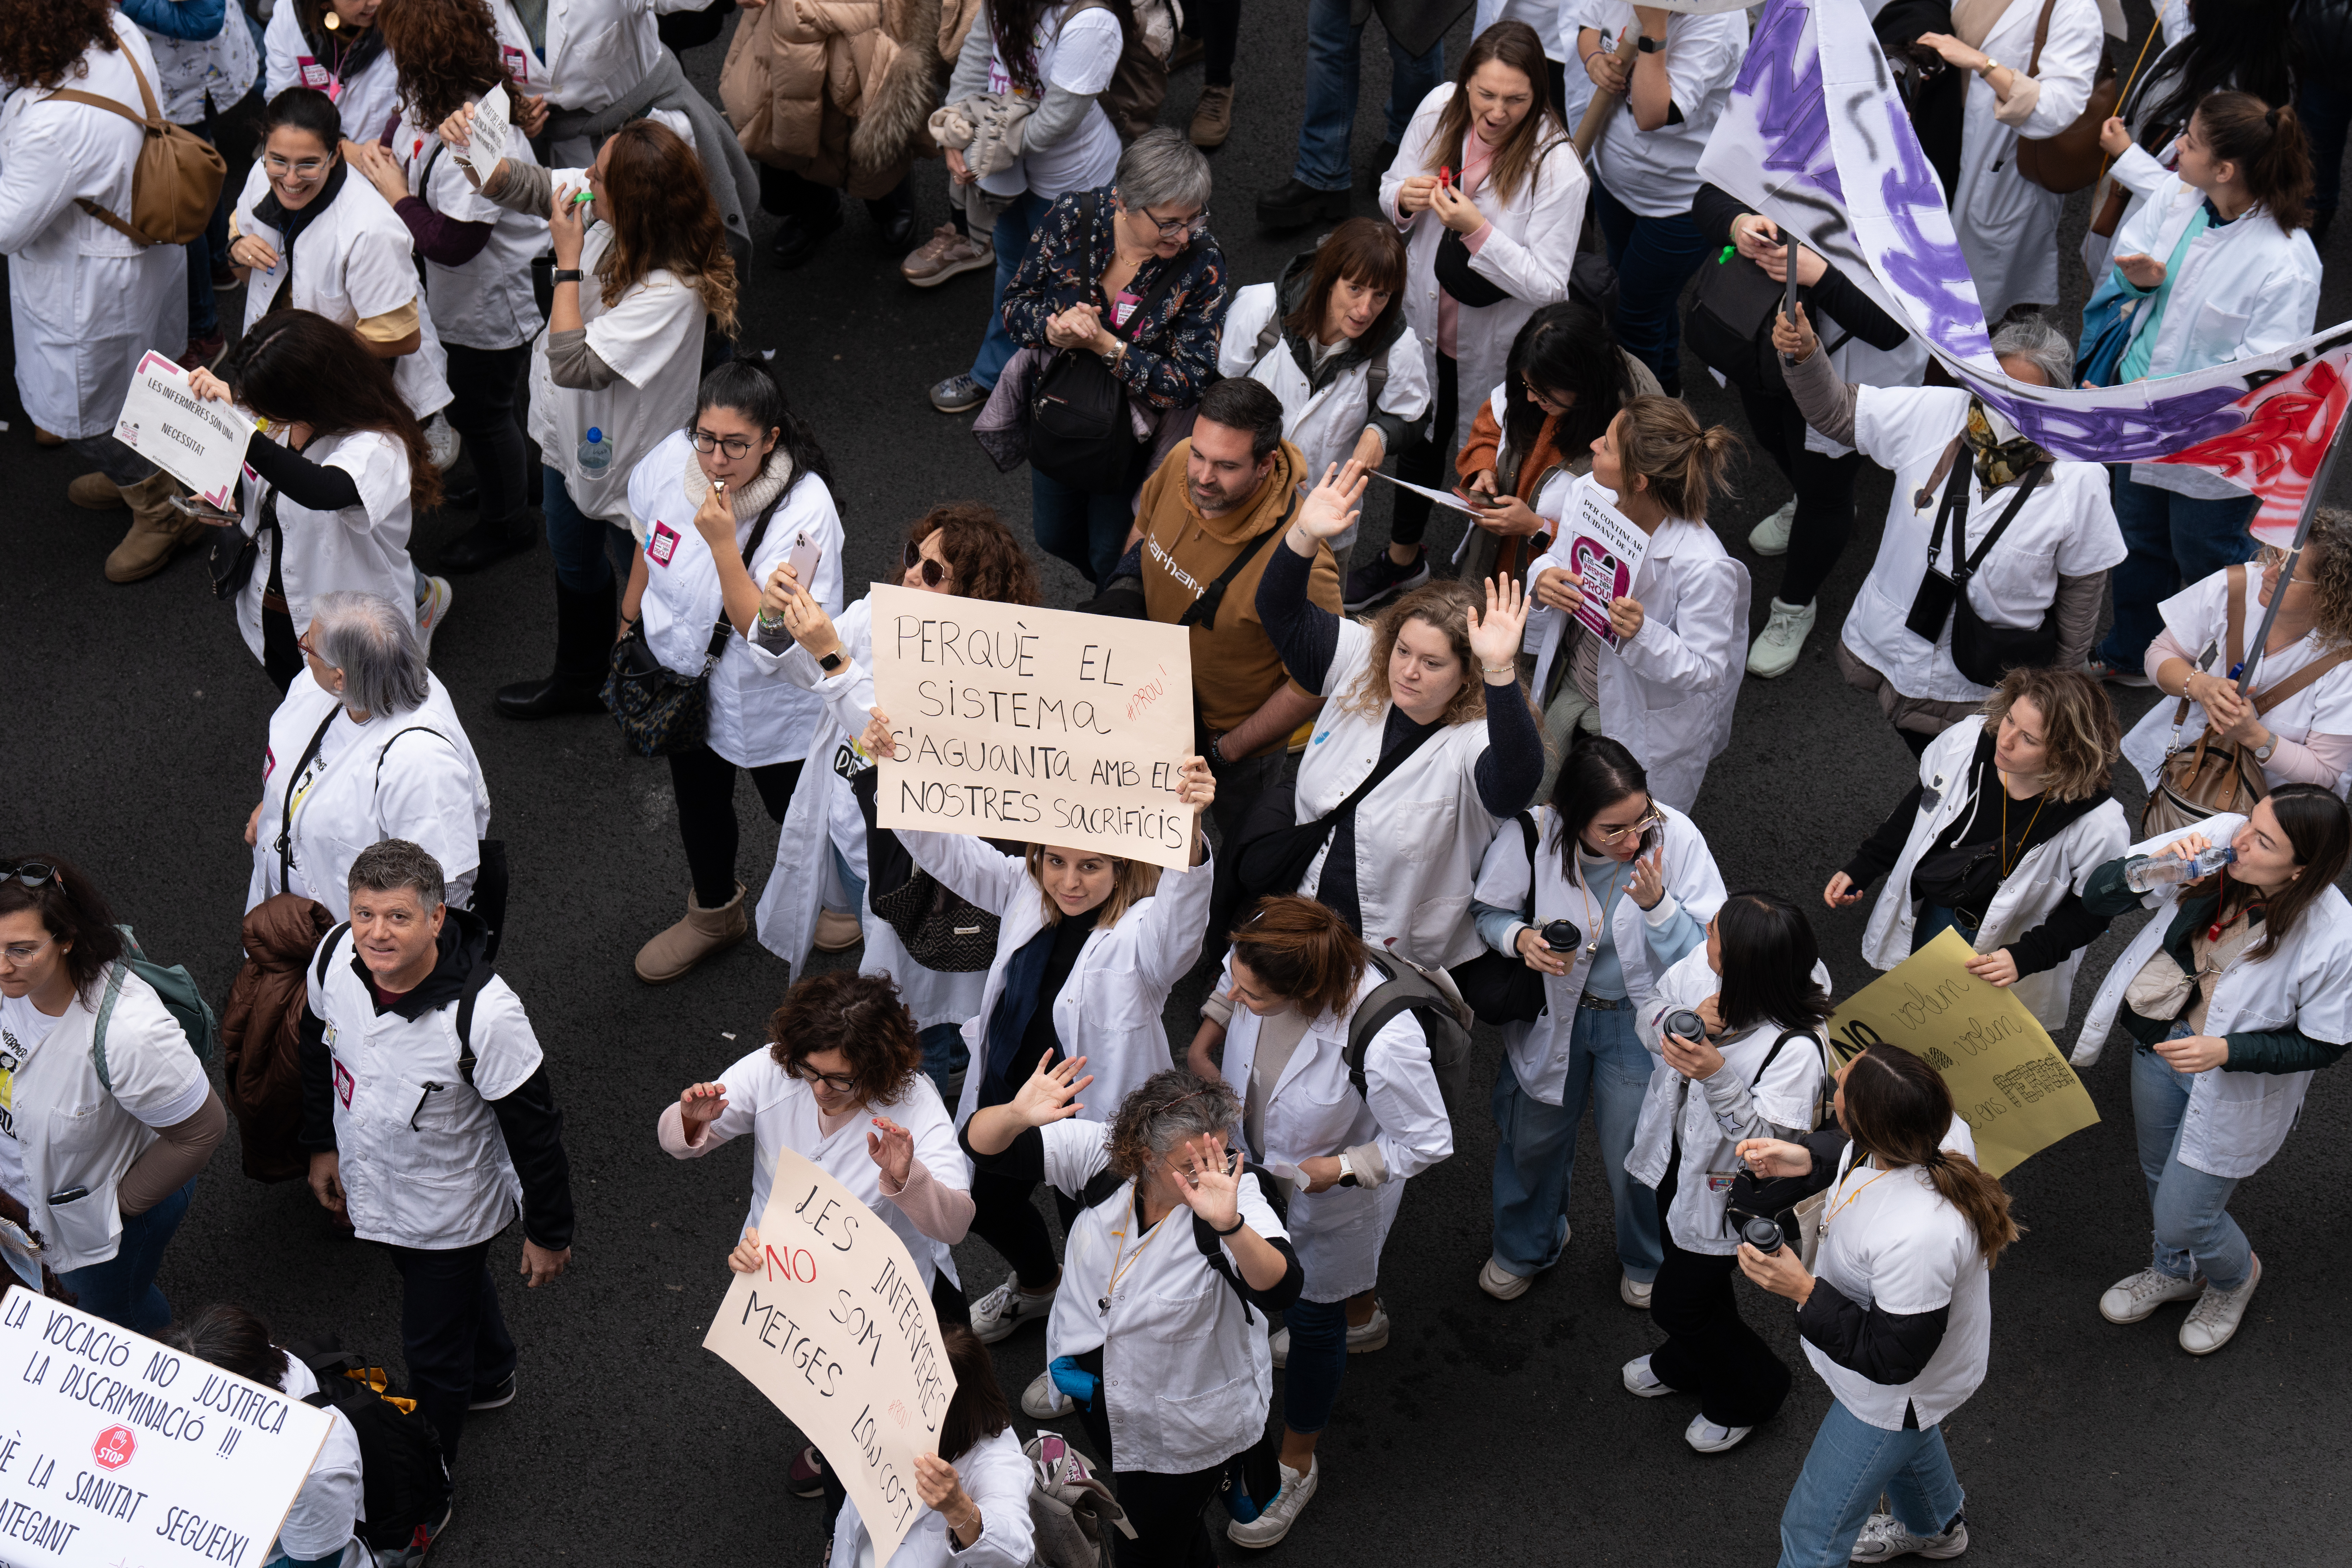 Los técnicos sanitarios siguen el camino de las enfermeras y anuncian una huelga indefinida